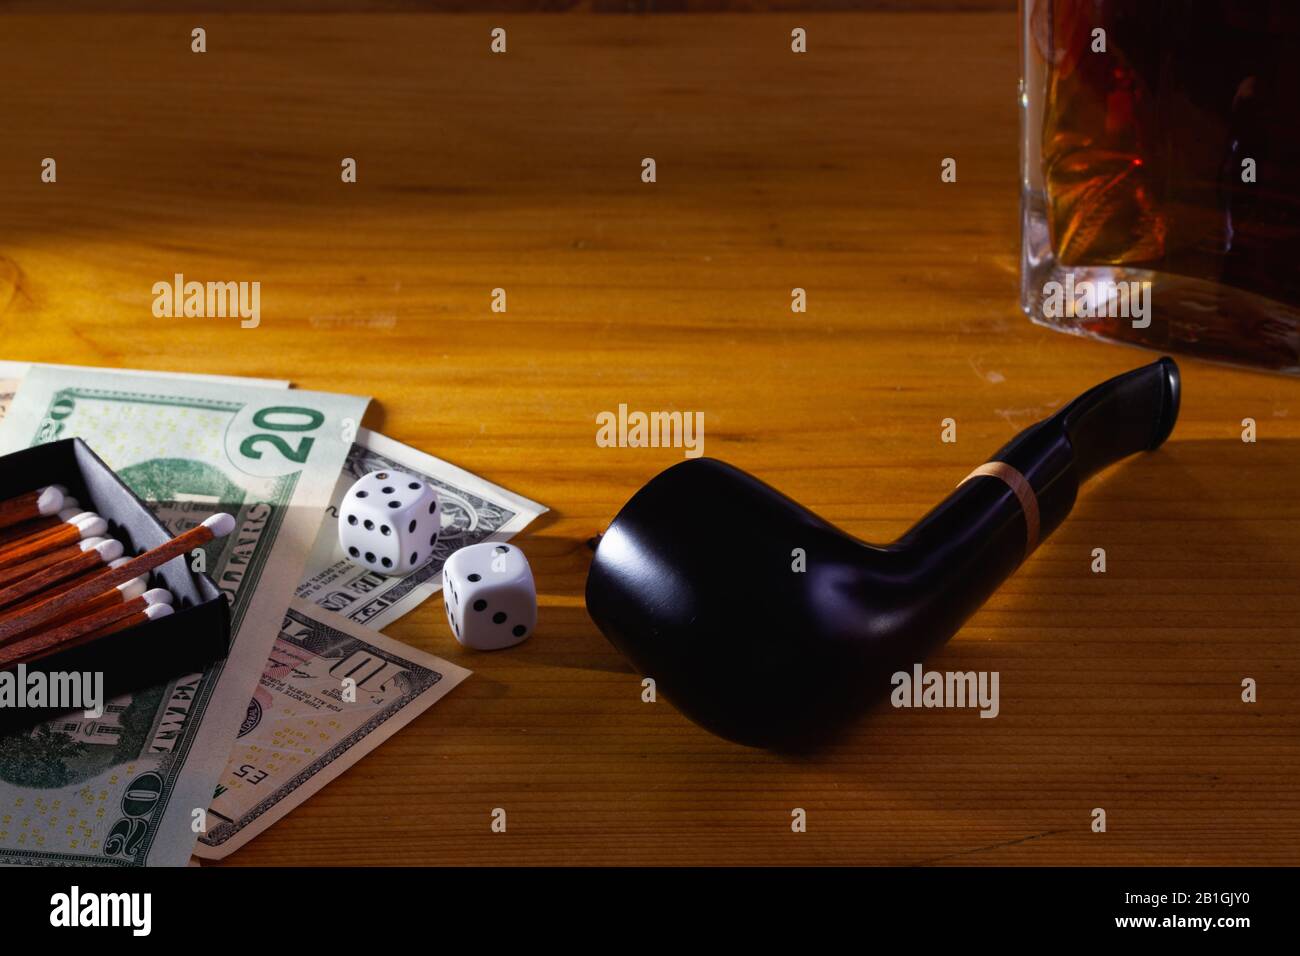 Jeux de hasard - tuyau de tabac, dés blancs, whisky écossais et billets de dollars sur la table en bois Banque D'Images